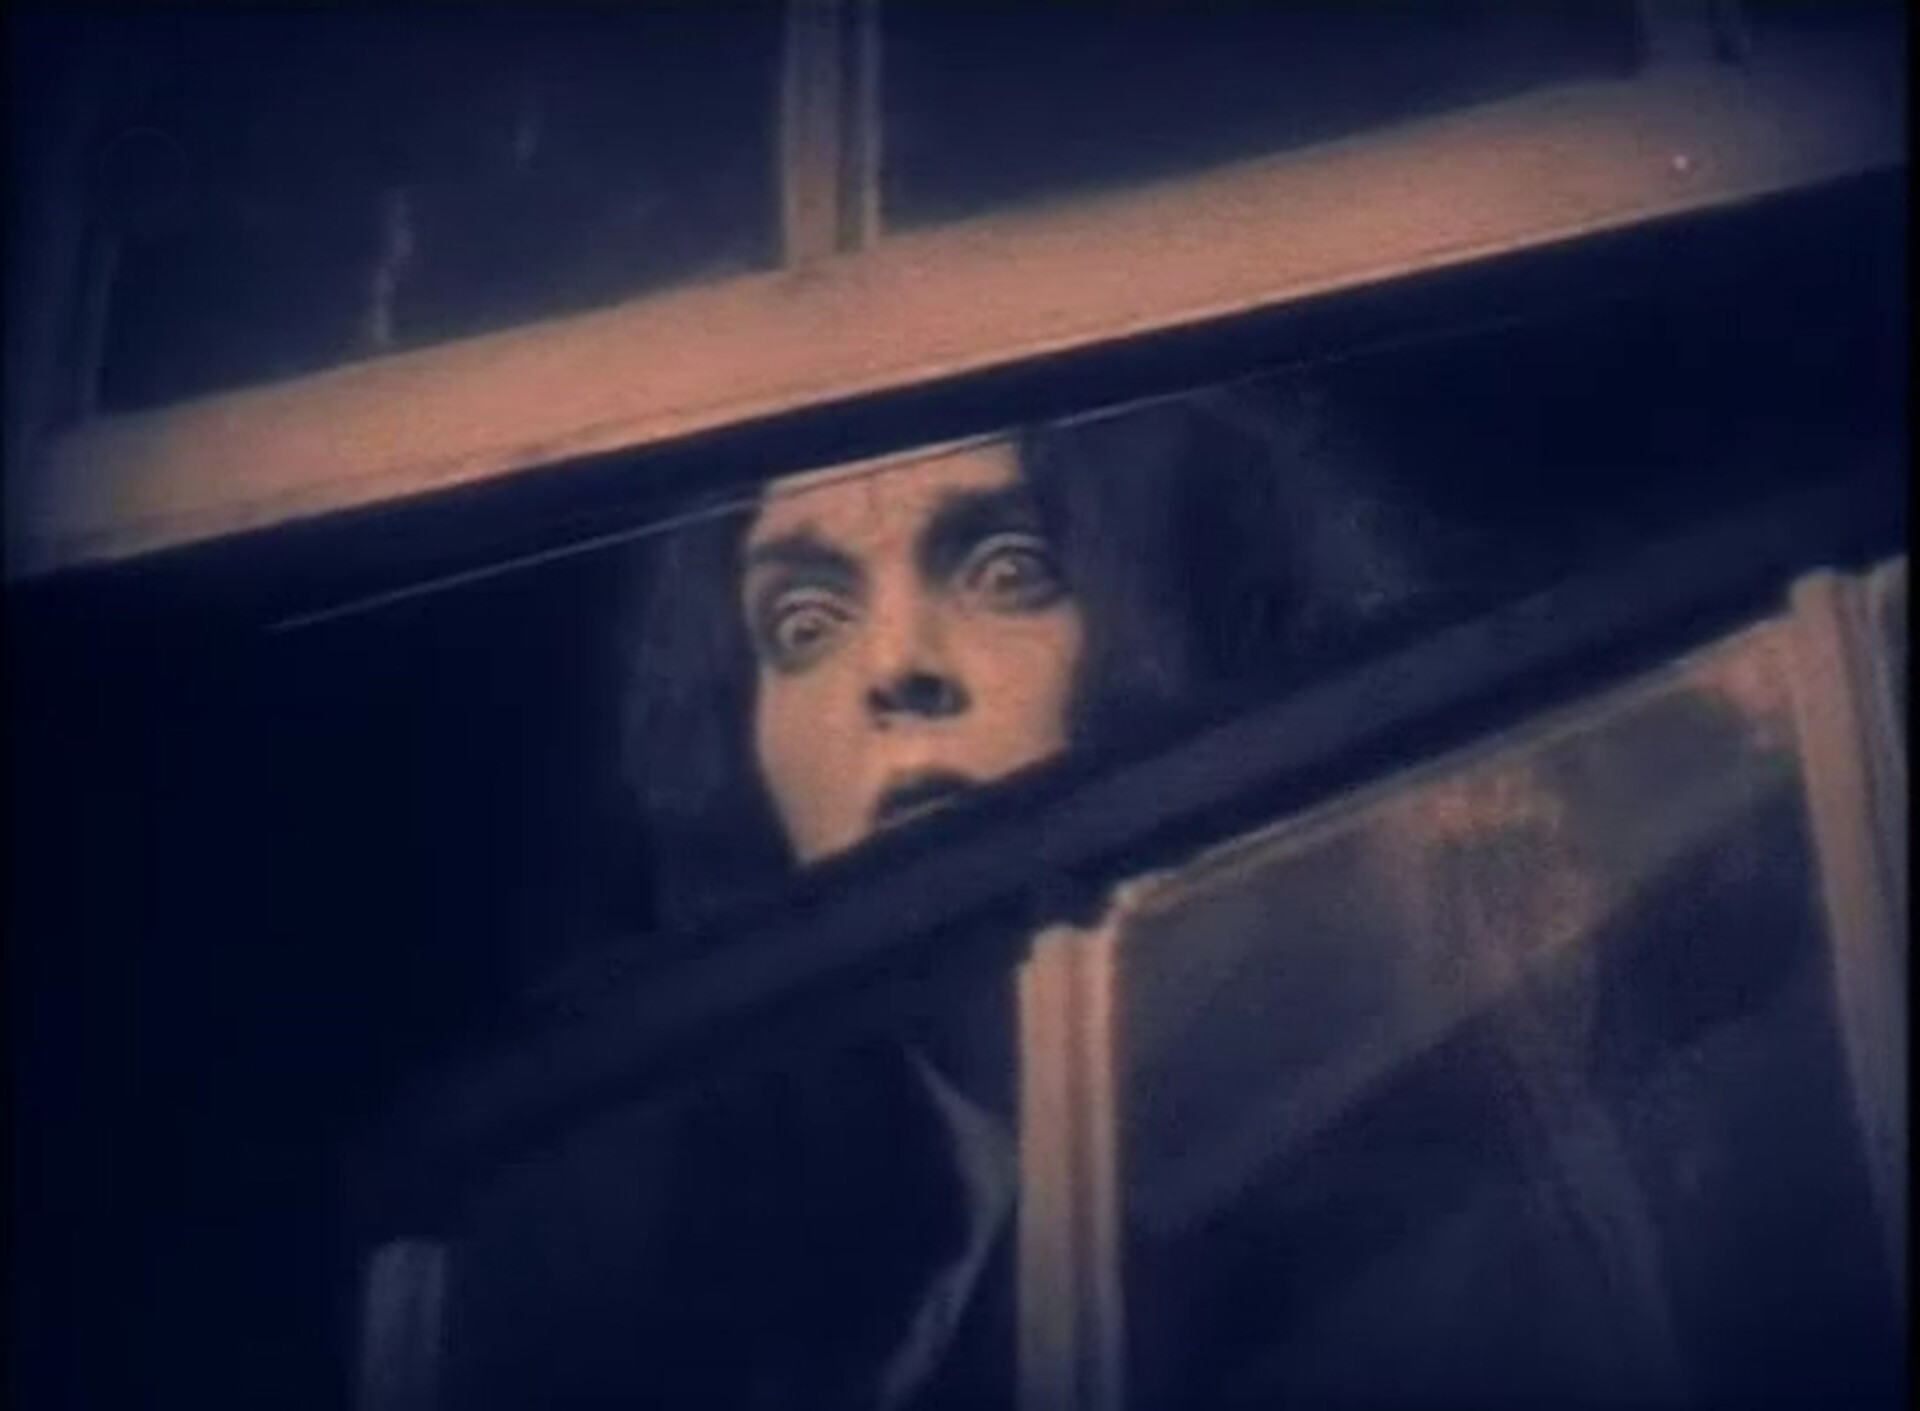  Kadr z amerykańskiego filmu „Chciwość” z 1924 roku. Widać na nim młodą kobietę patrzącą w dół. Kobieta wygląda na przestraszoną – ma szeroko otwarte oczy i wysoko uniesione brwi. 